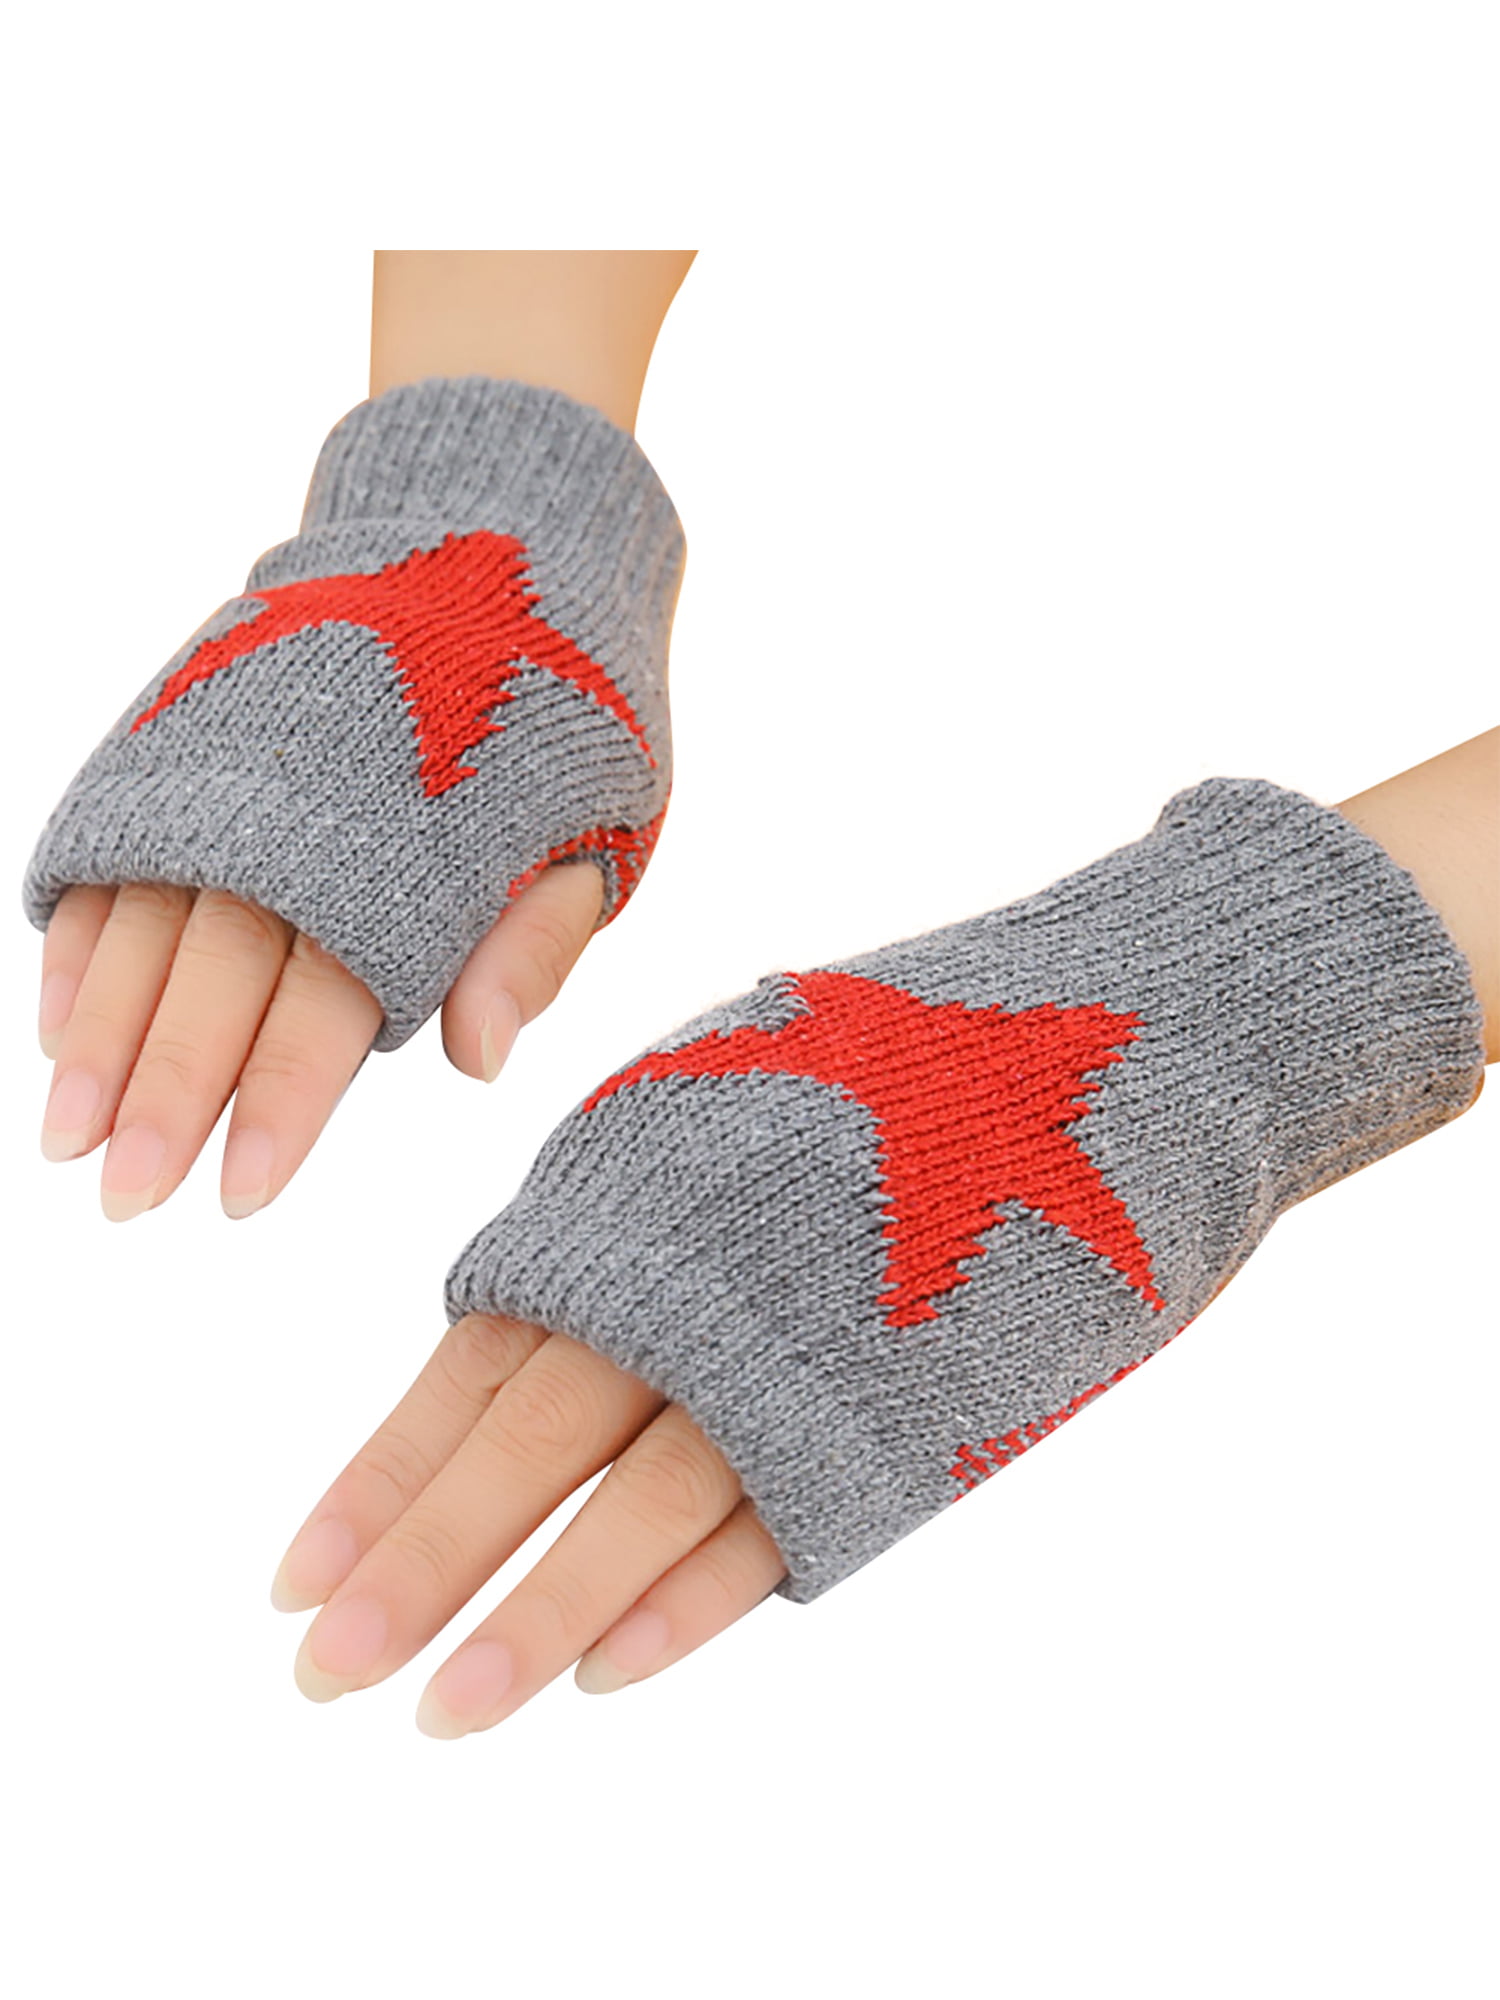 Winter Fingerless Gloves Women Cashmere Warm Gloves Hand Wrist Warmer Mittens